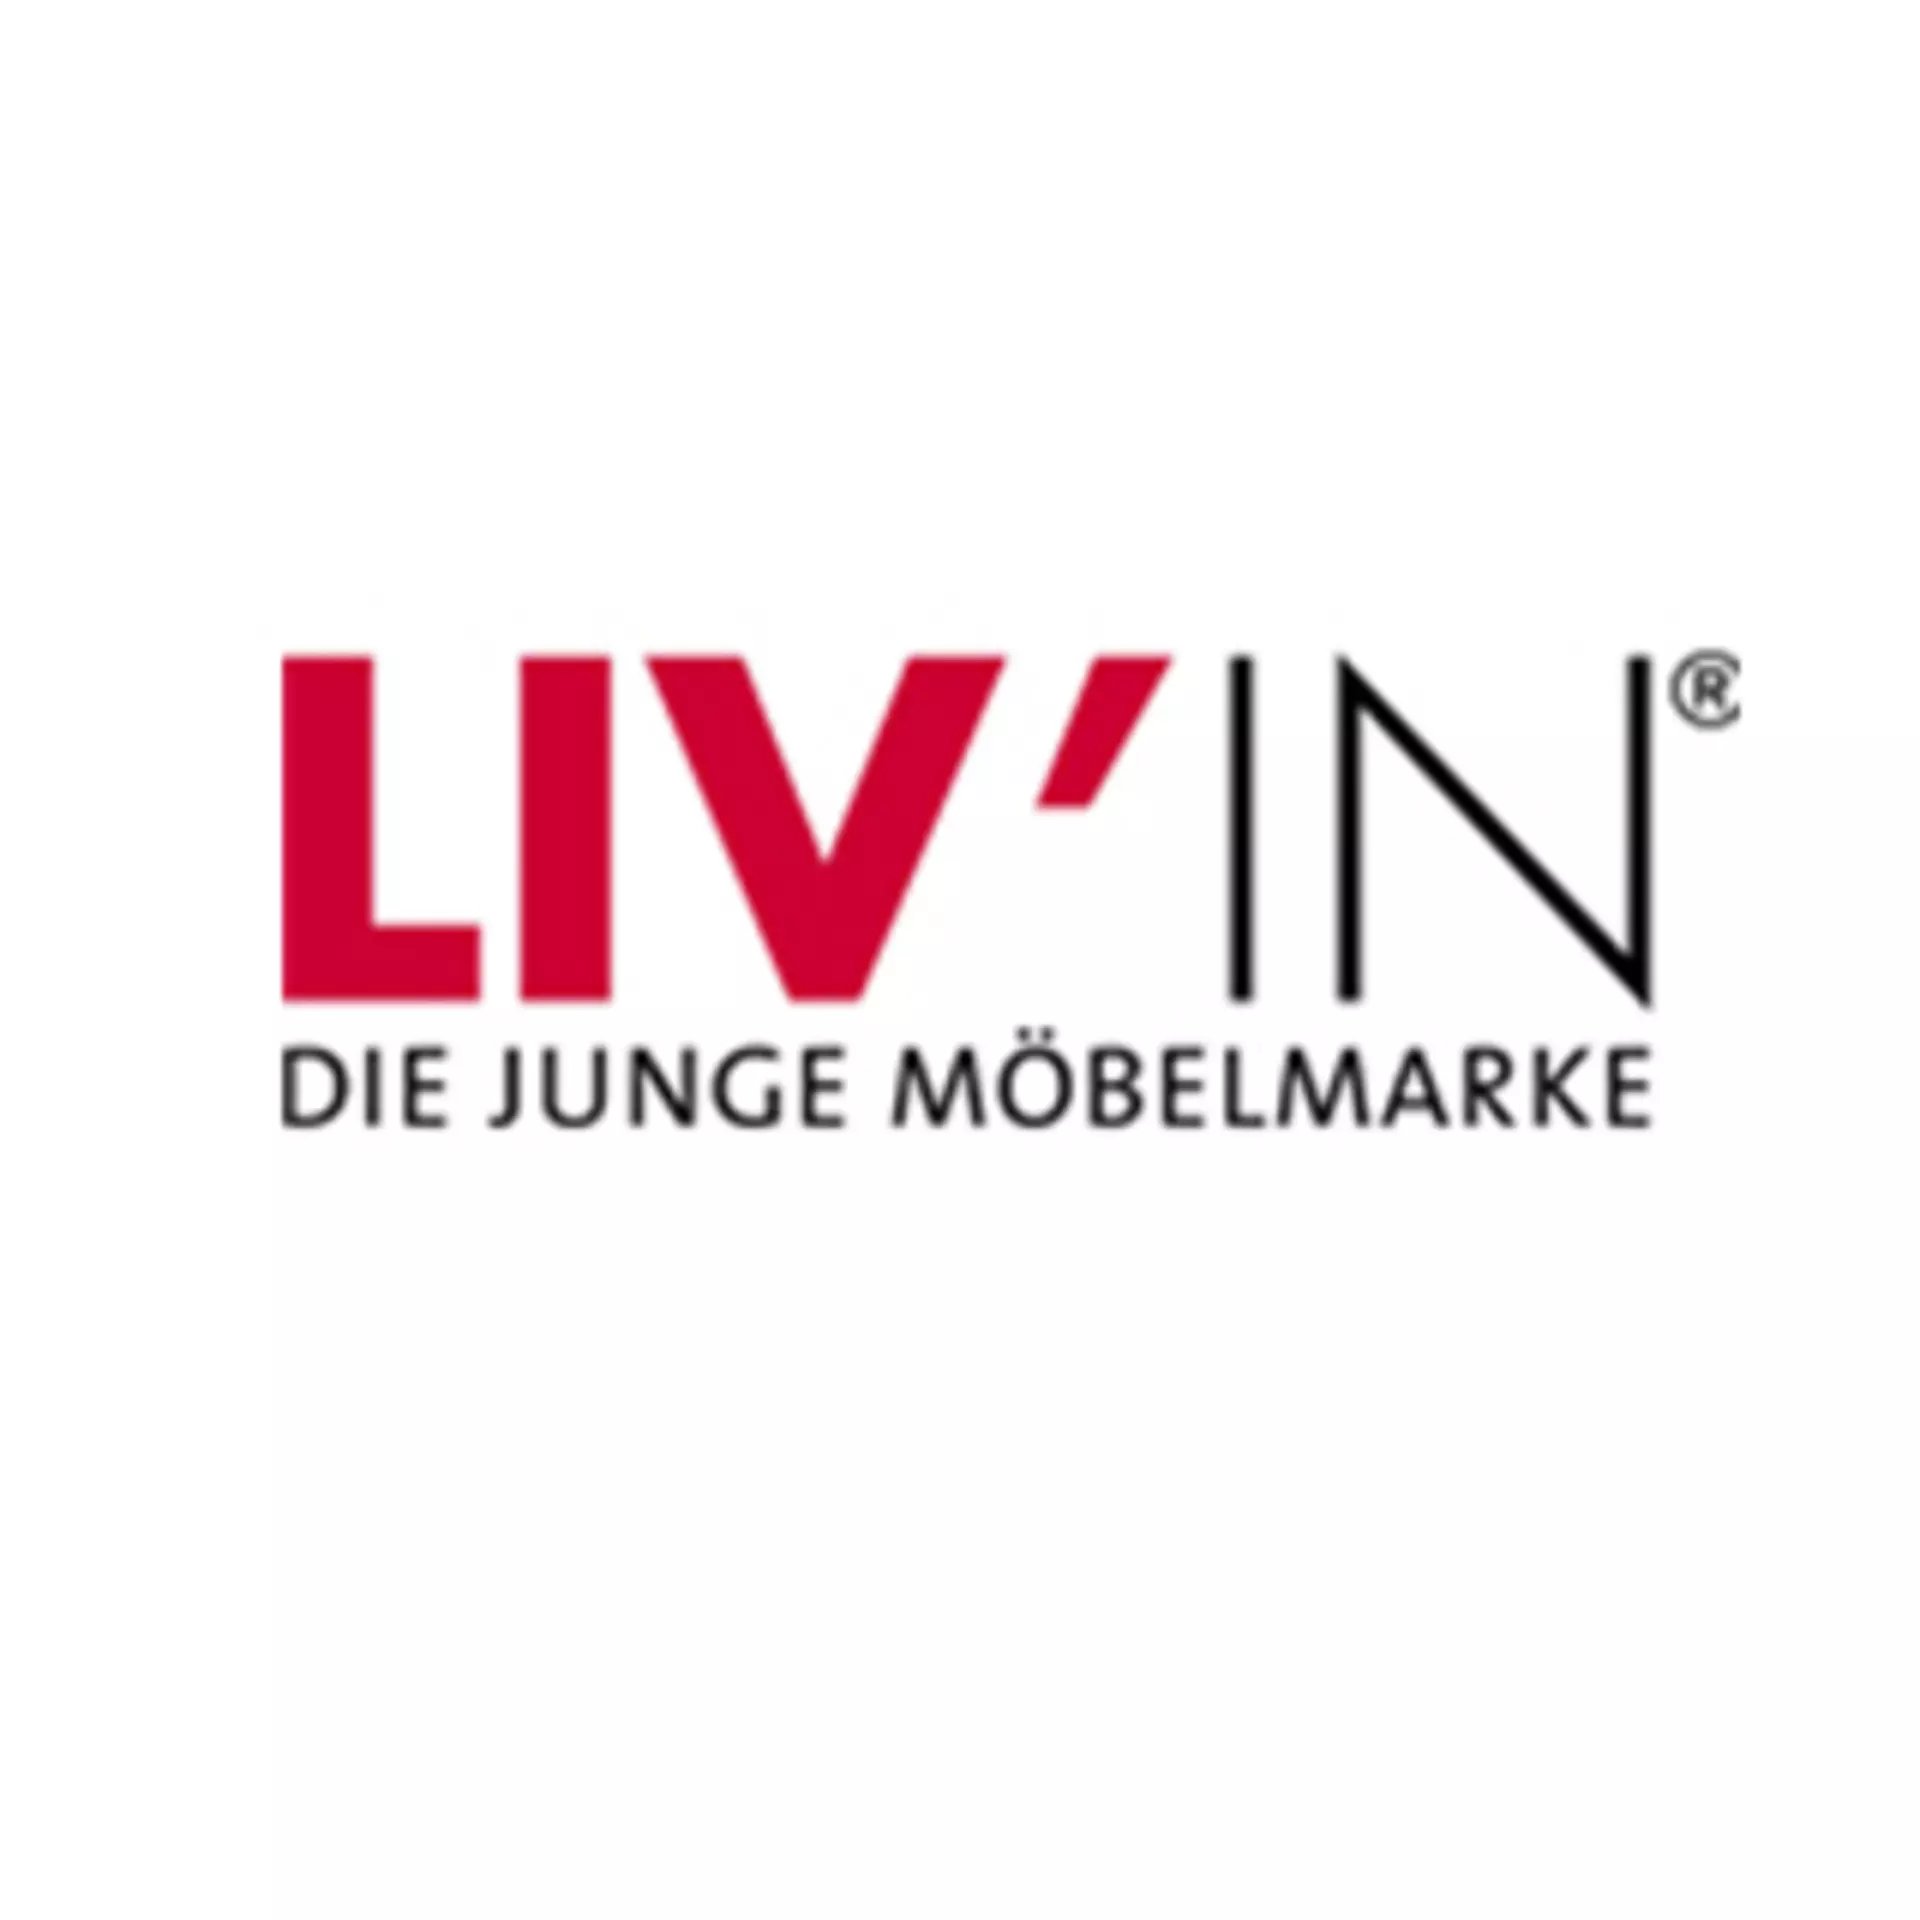 Logo "LIV'IN - Die junge Möbelmarke"